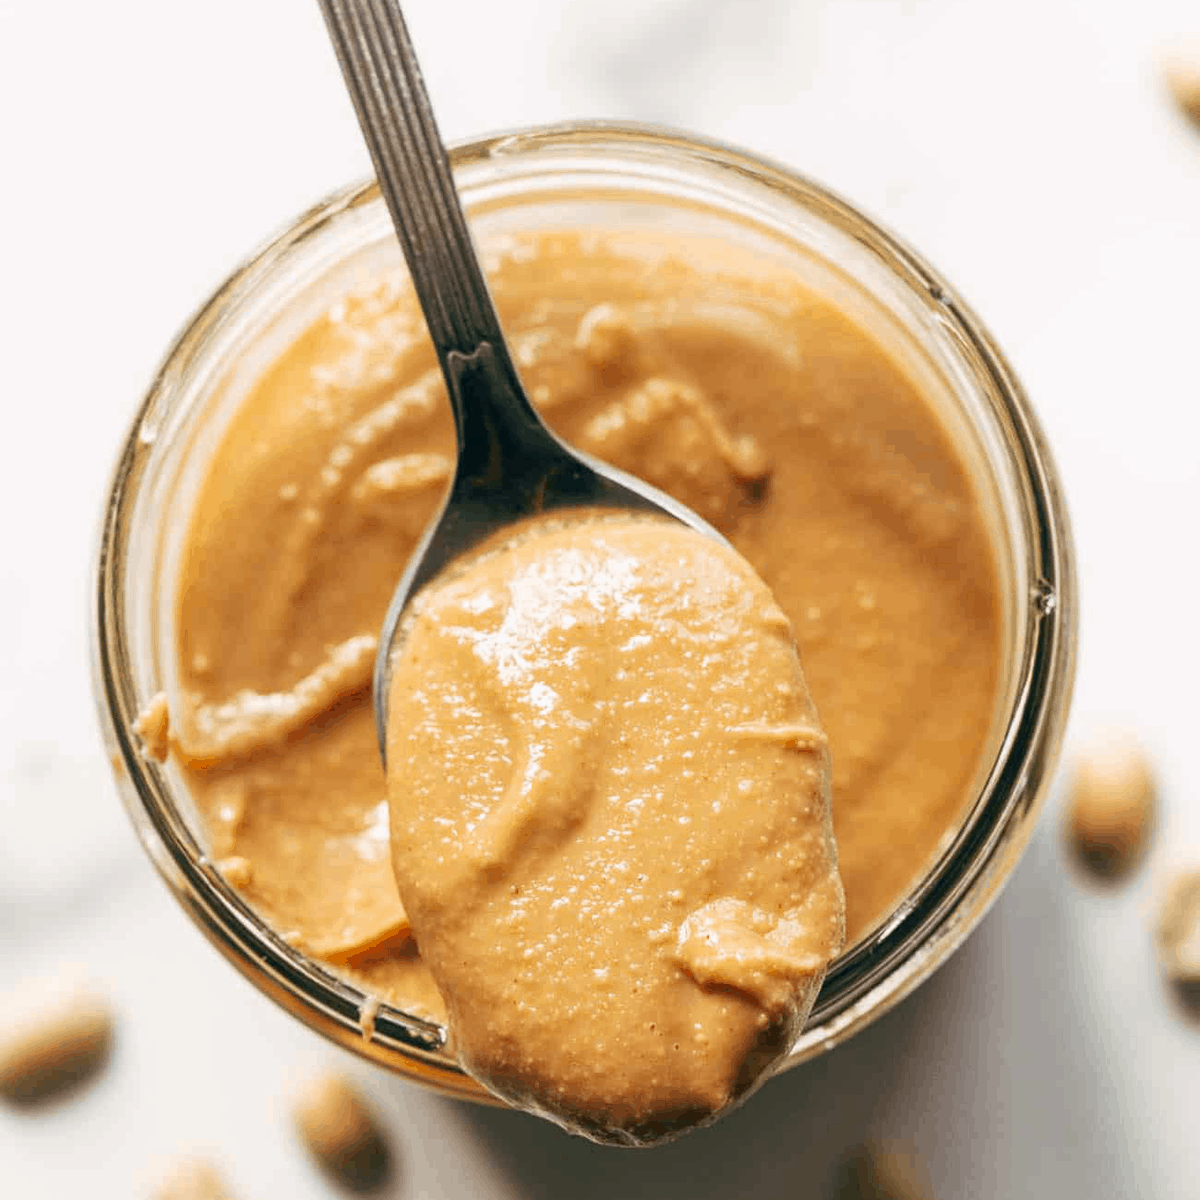 20 Minute Homemade Peanut Butter